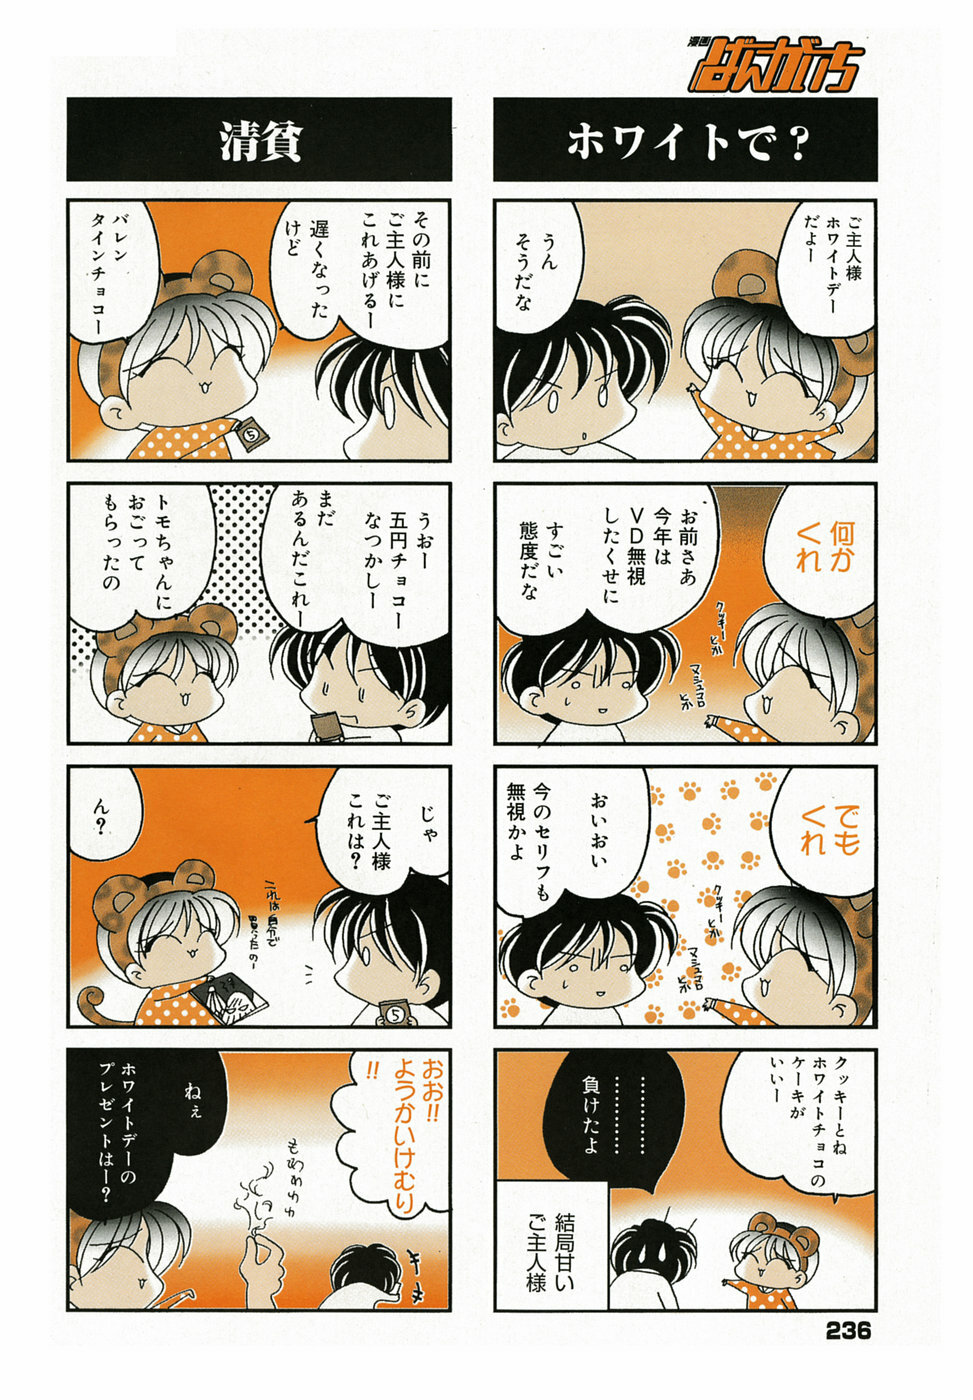 Manga Bangaichi 2005-05 page 225 full